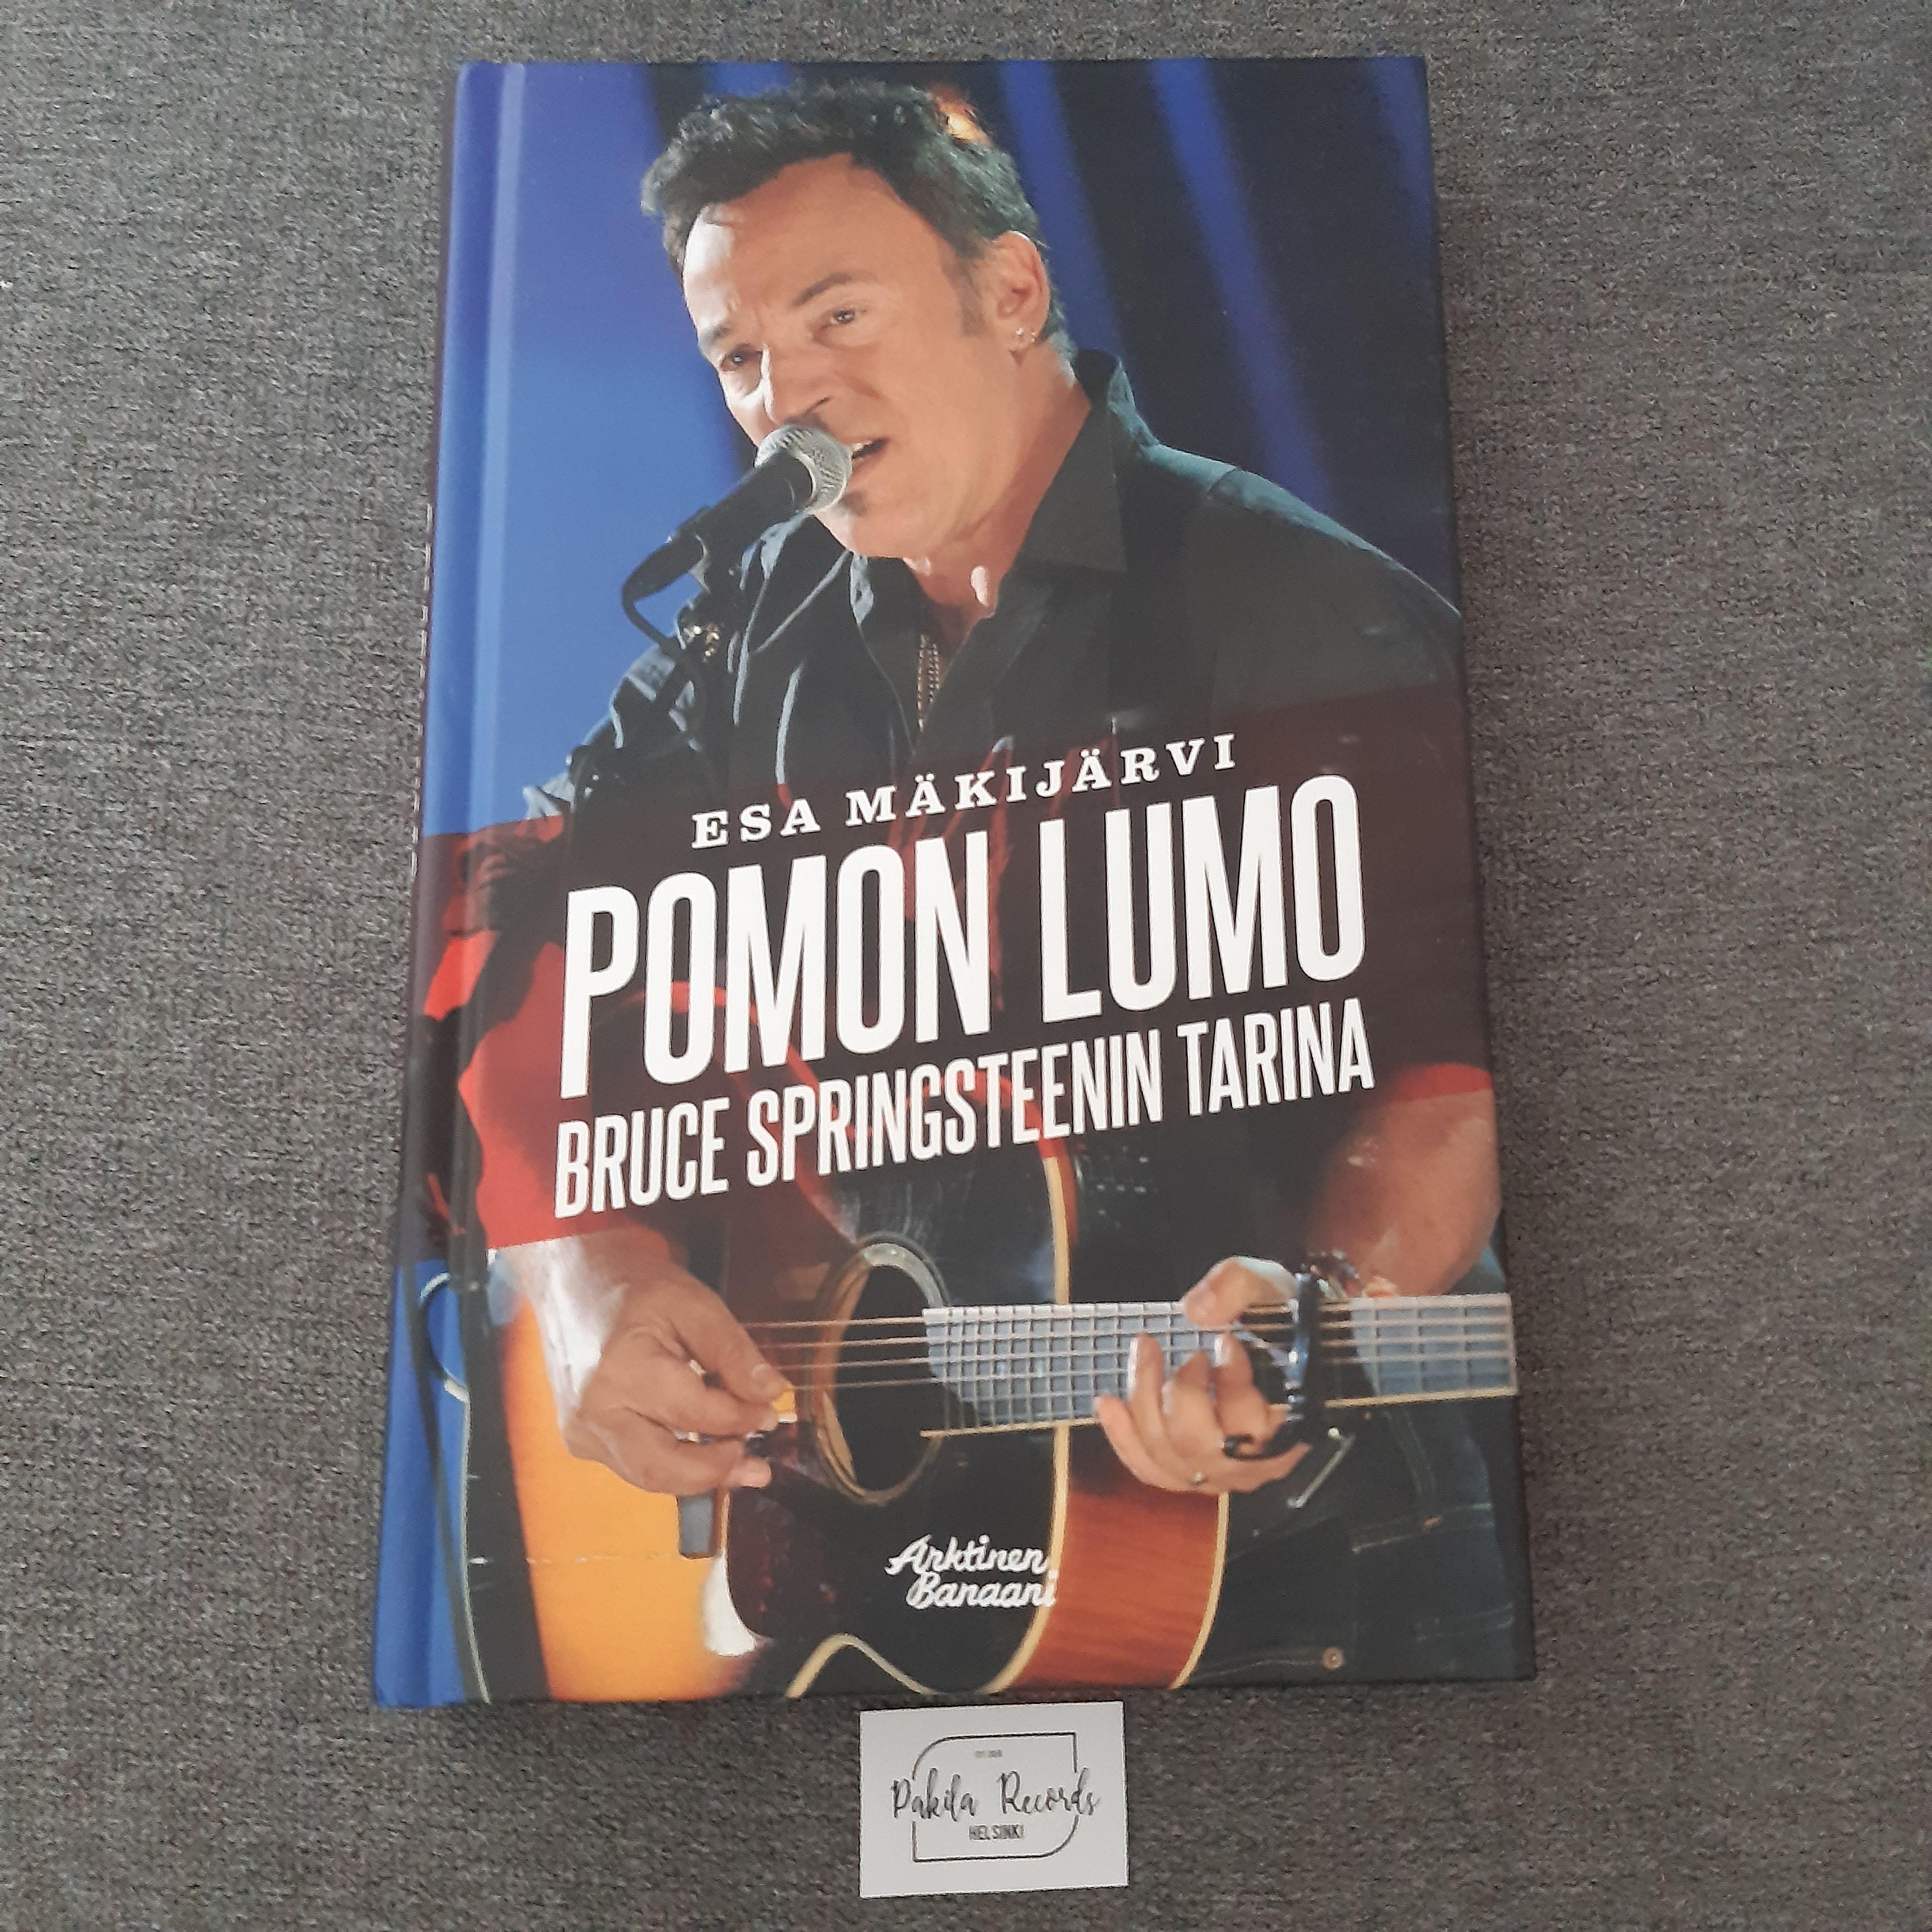 Pomon Lumo, Bruce Springsteenin tarina - Esa Mäkijärvi - Kirja (käytetty)